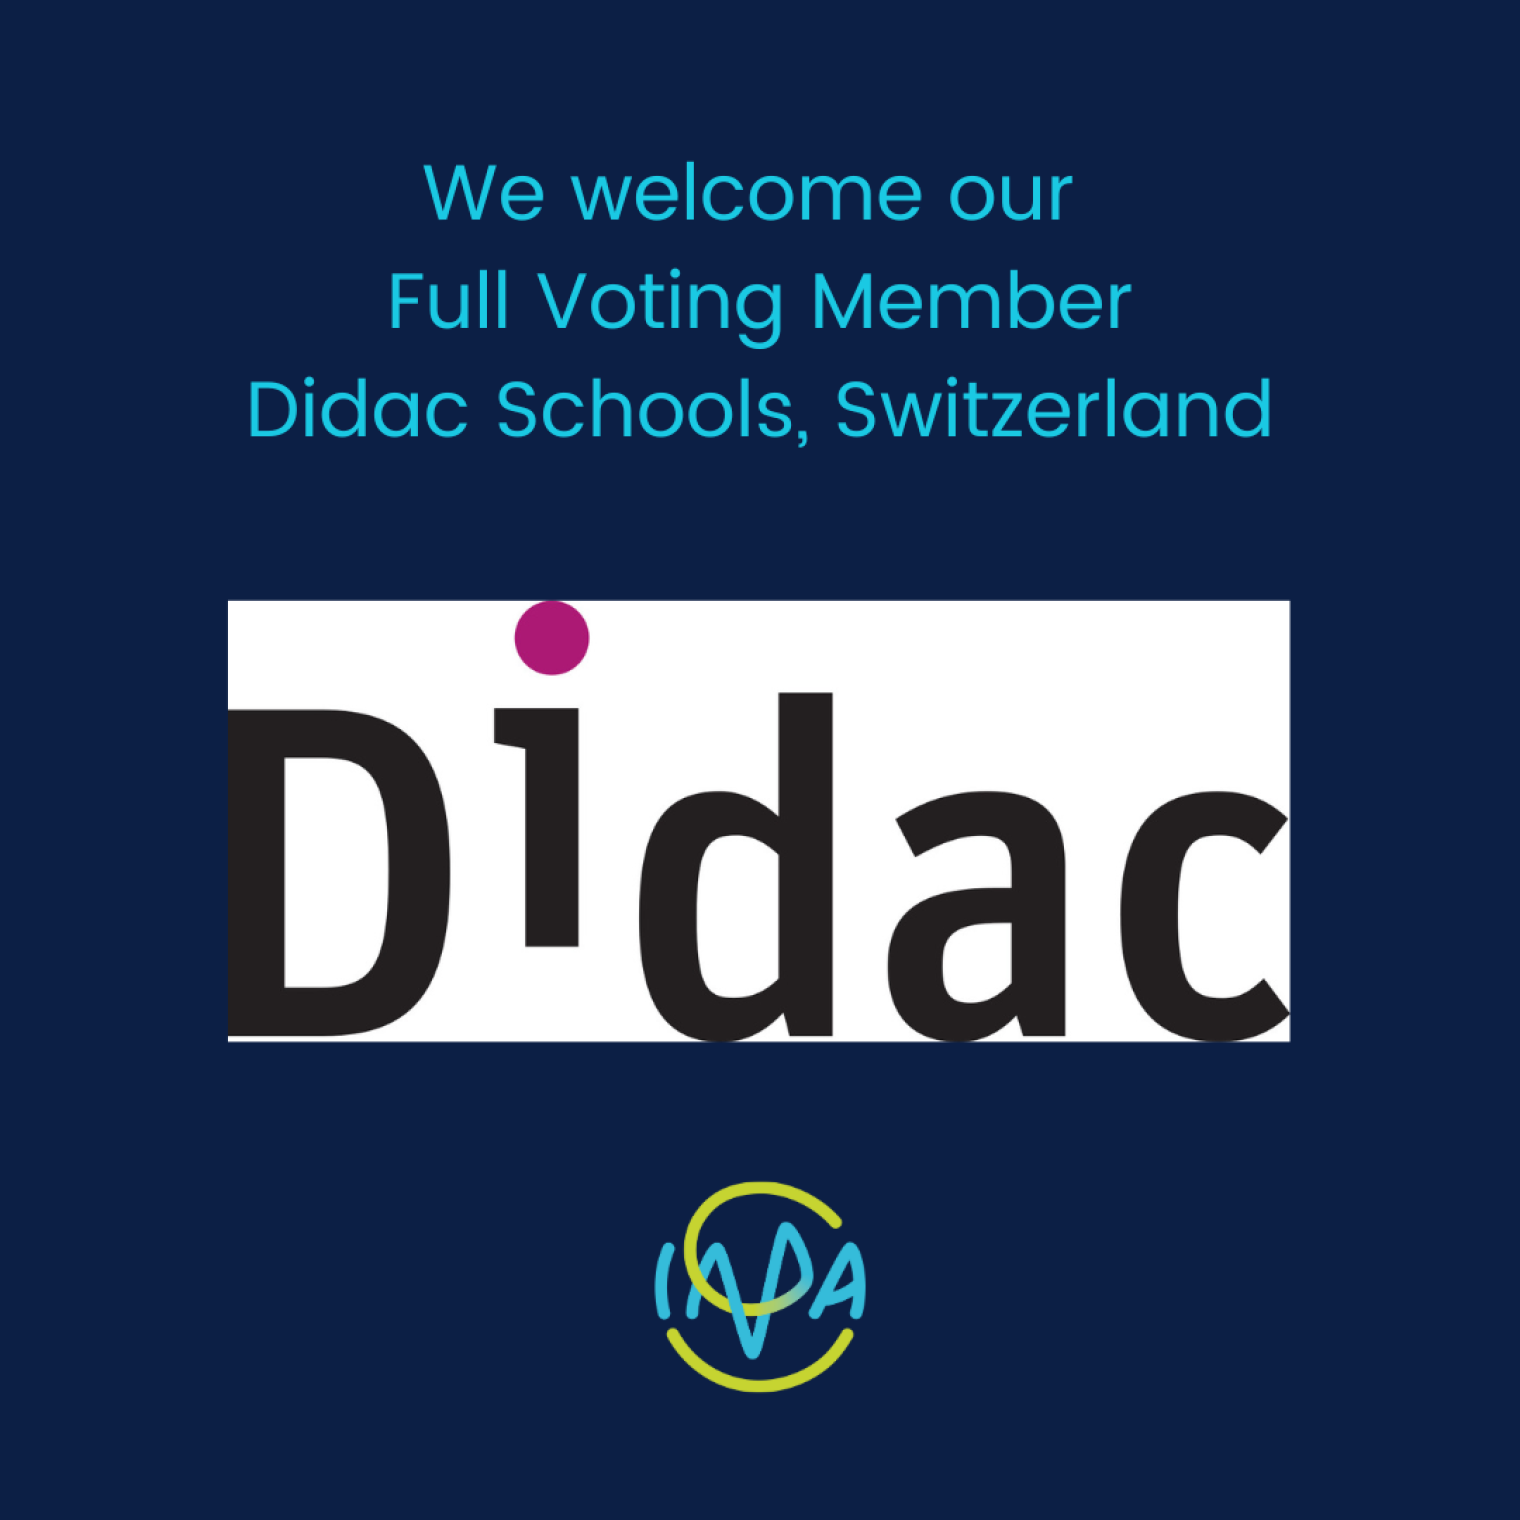 We welcome full voting member Didac Schools, Switzerland